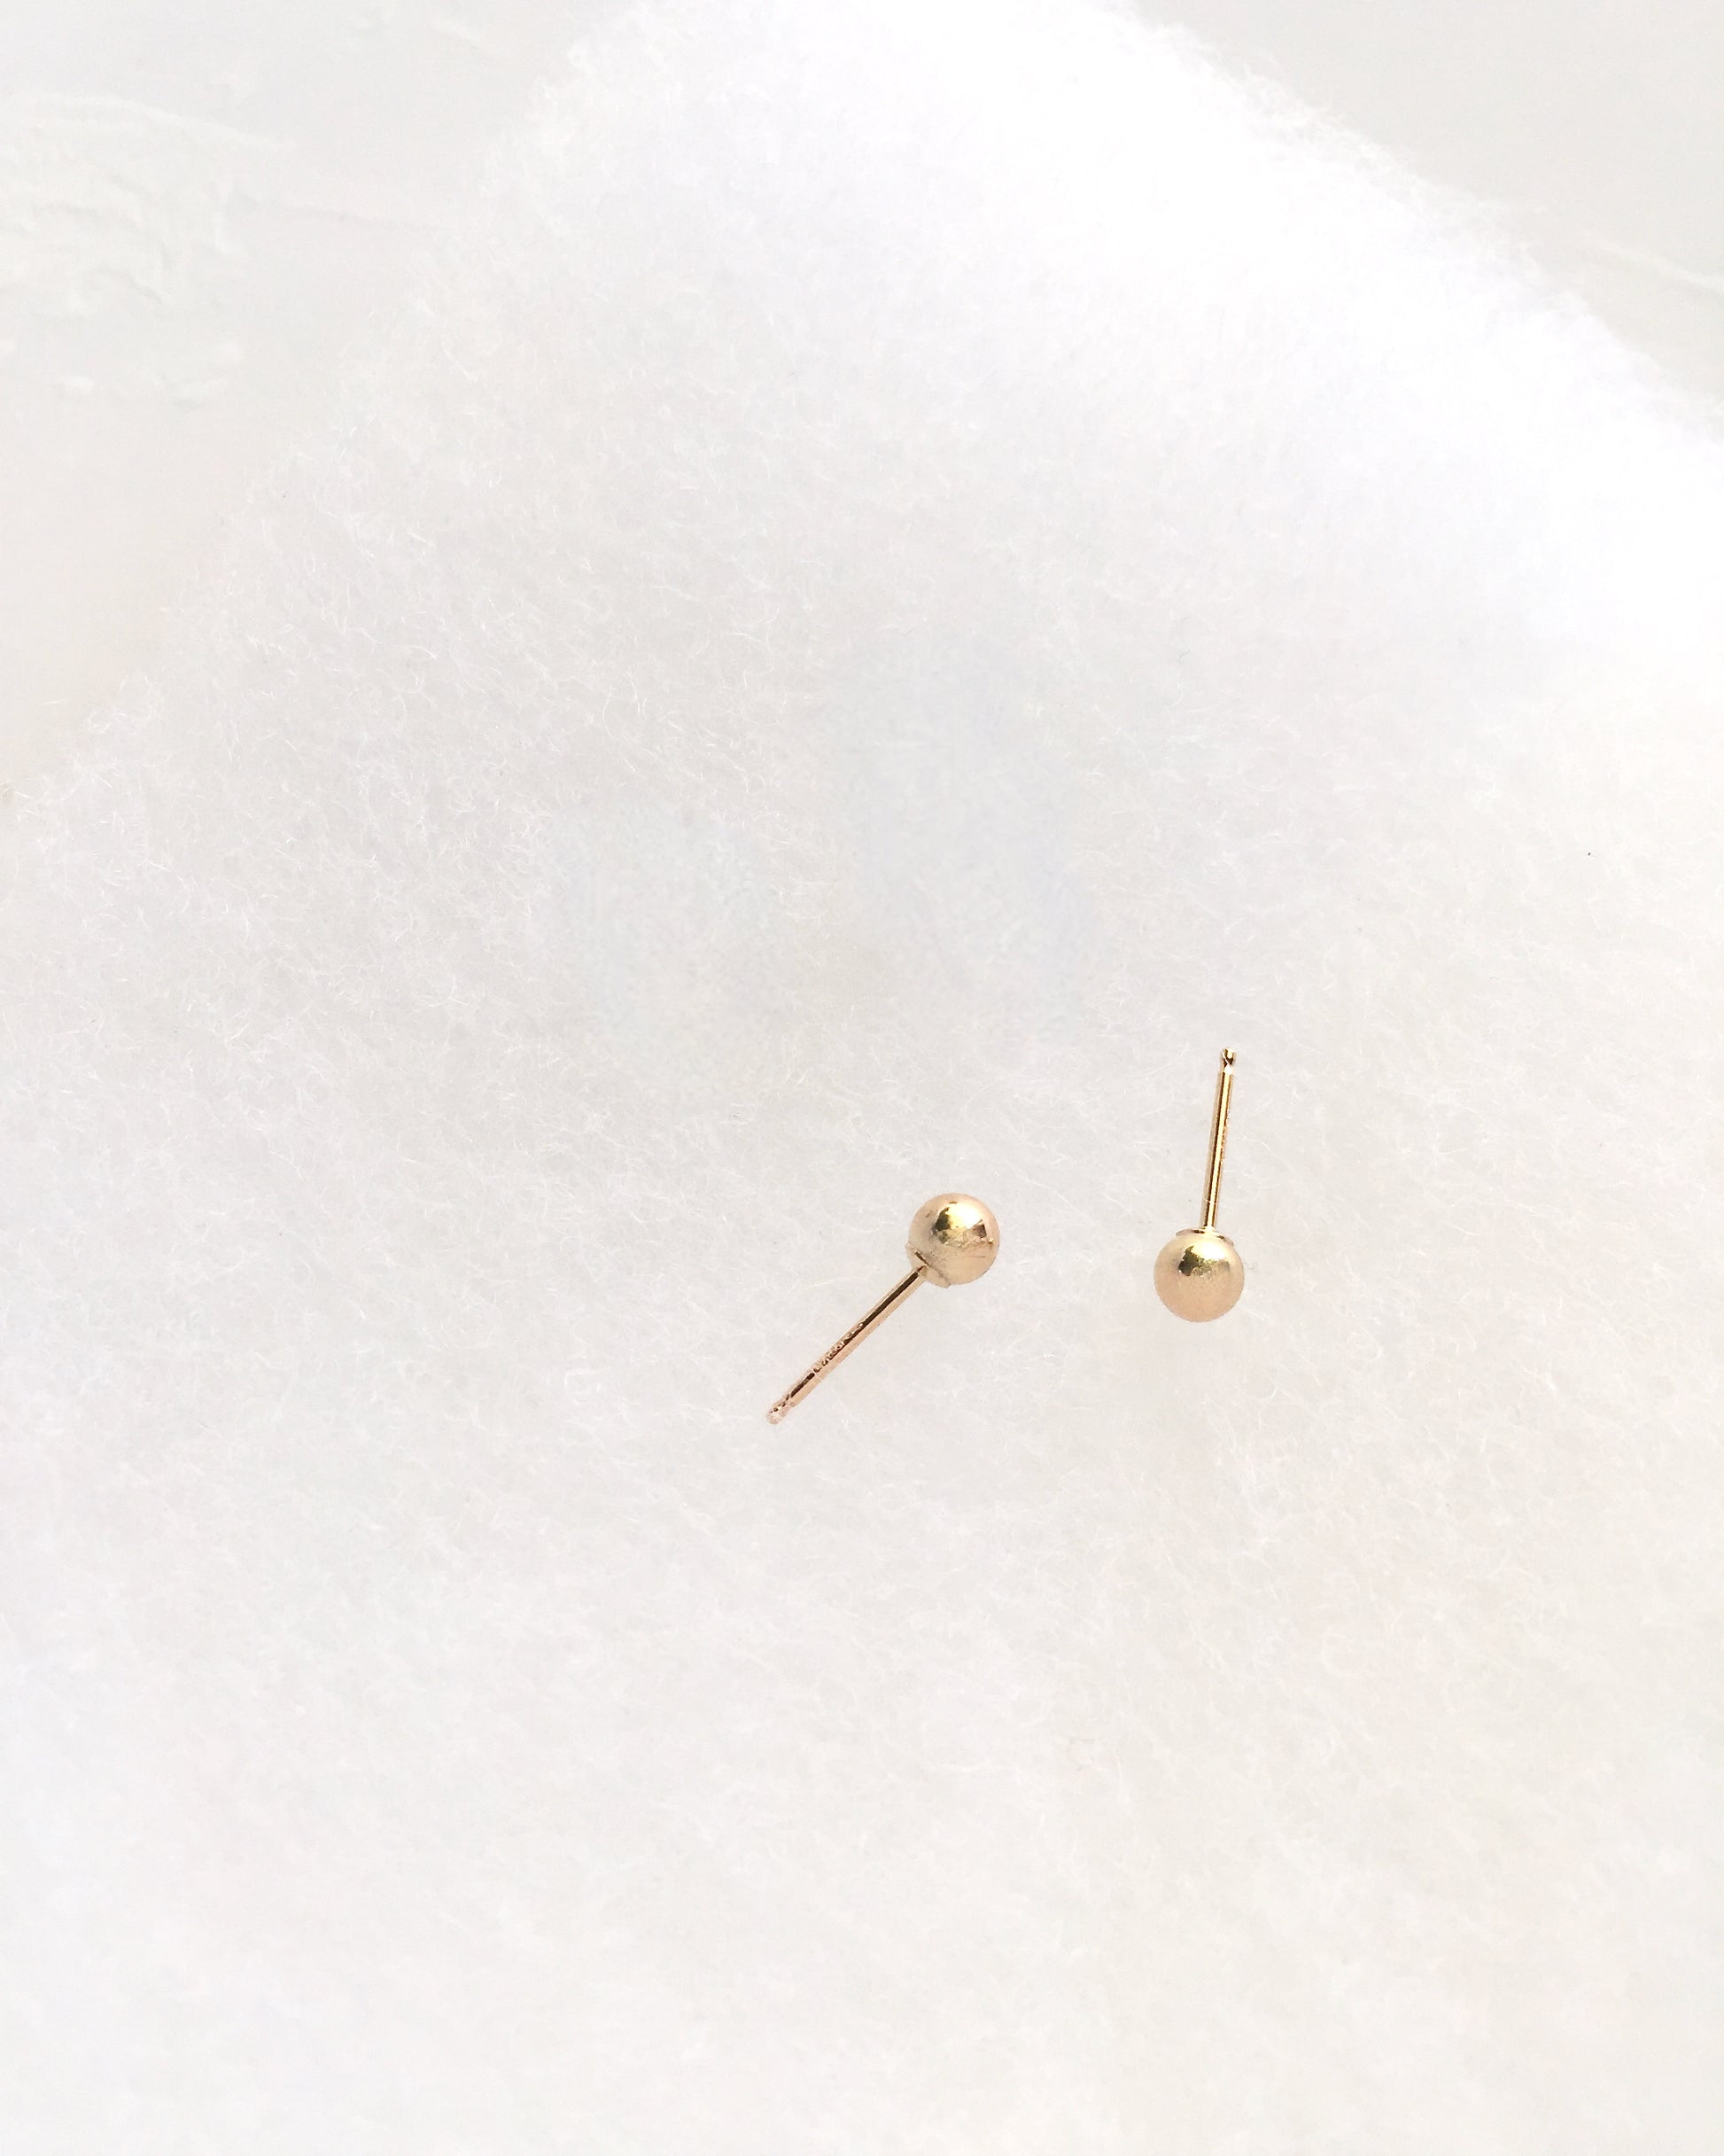 Dainty Stud Earrings | Minimalist Everyday Earrings | Delicate Ball Stud Earrings In Gold Filled or Sterling Silver | Minimalist Ball Stud Earrings | Delicate Stud Earrings | Simple Ball Stud Earrings